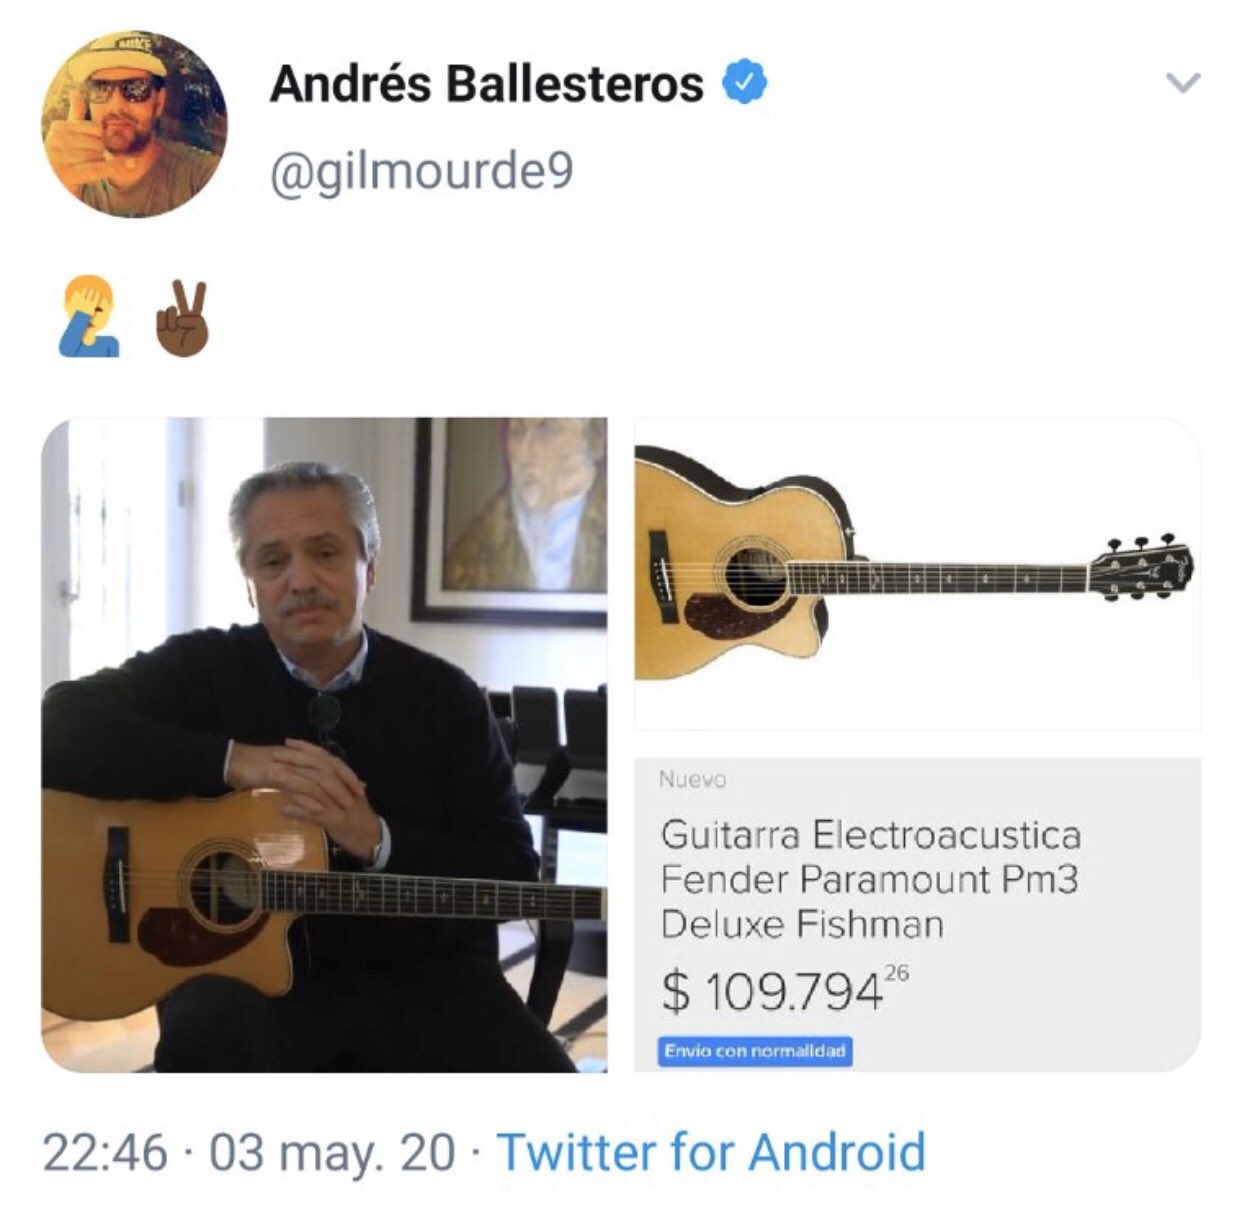 Una Guitarra de Alberto vale mas que todo lo que lo que dijo en su DDJJ de bienes !!